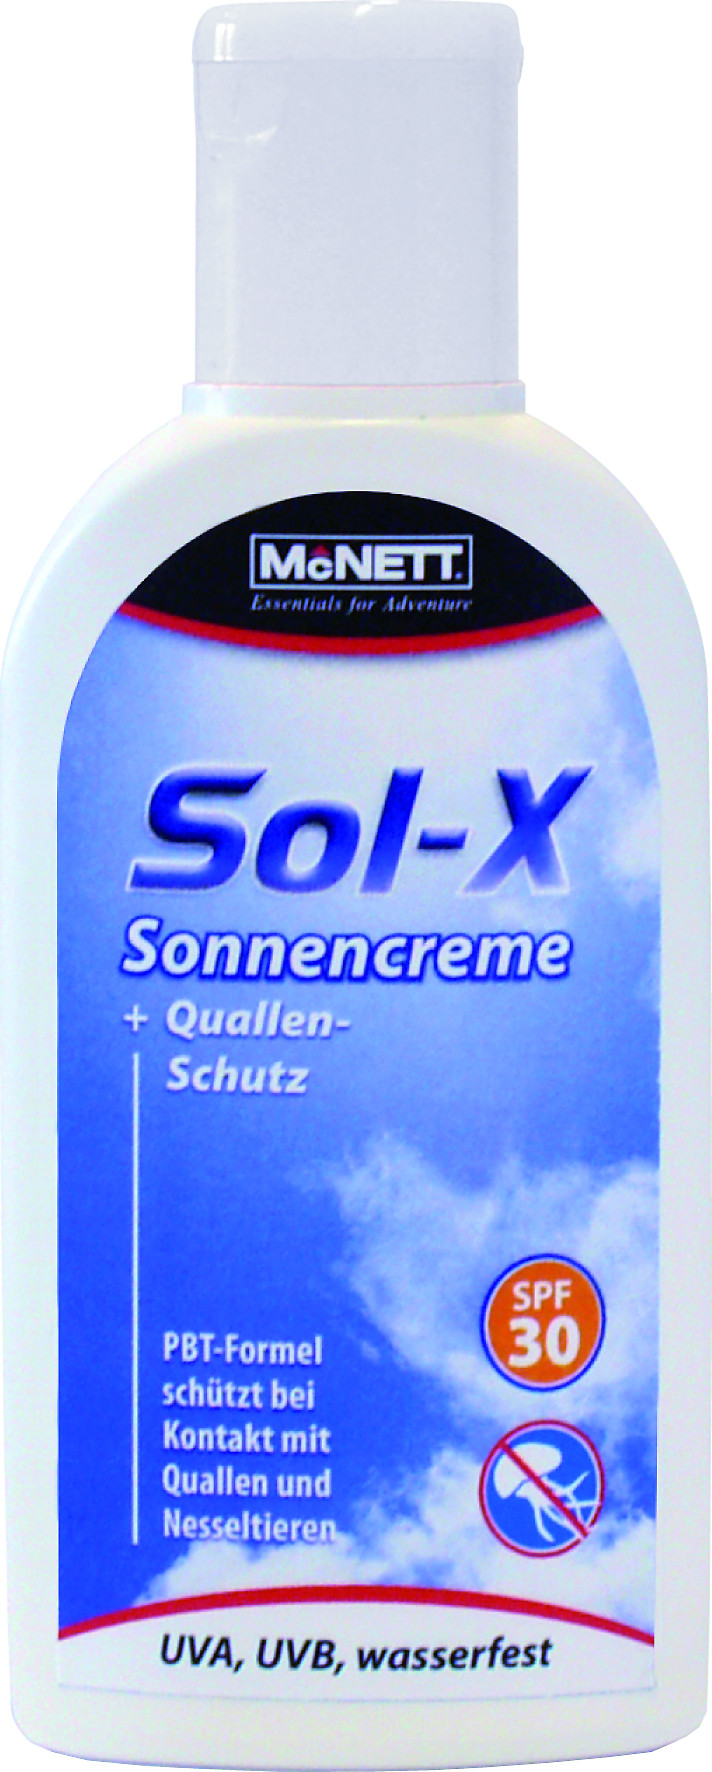 Sonnencreme Sol-X mit Quallenschutz von McNett